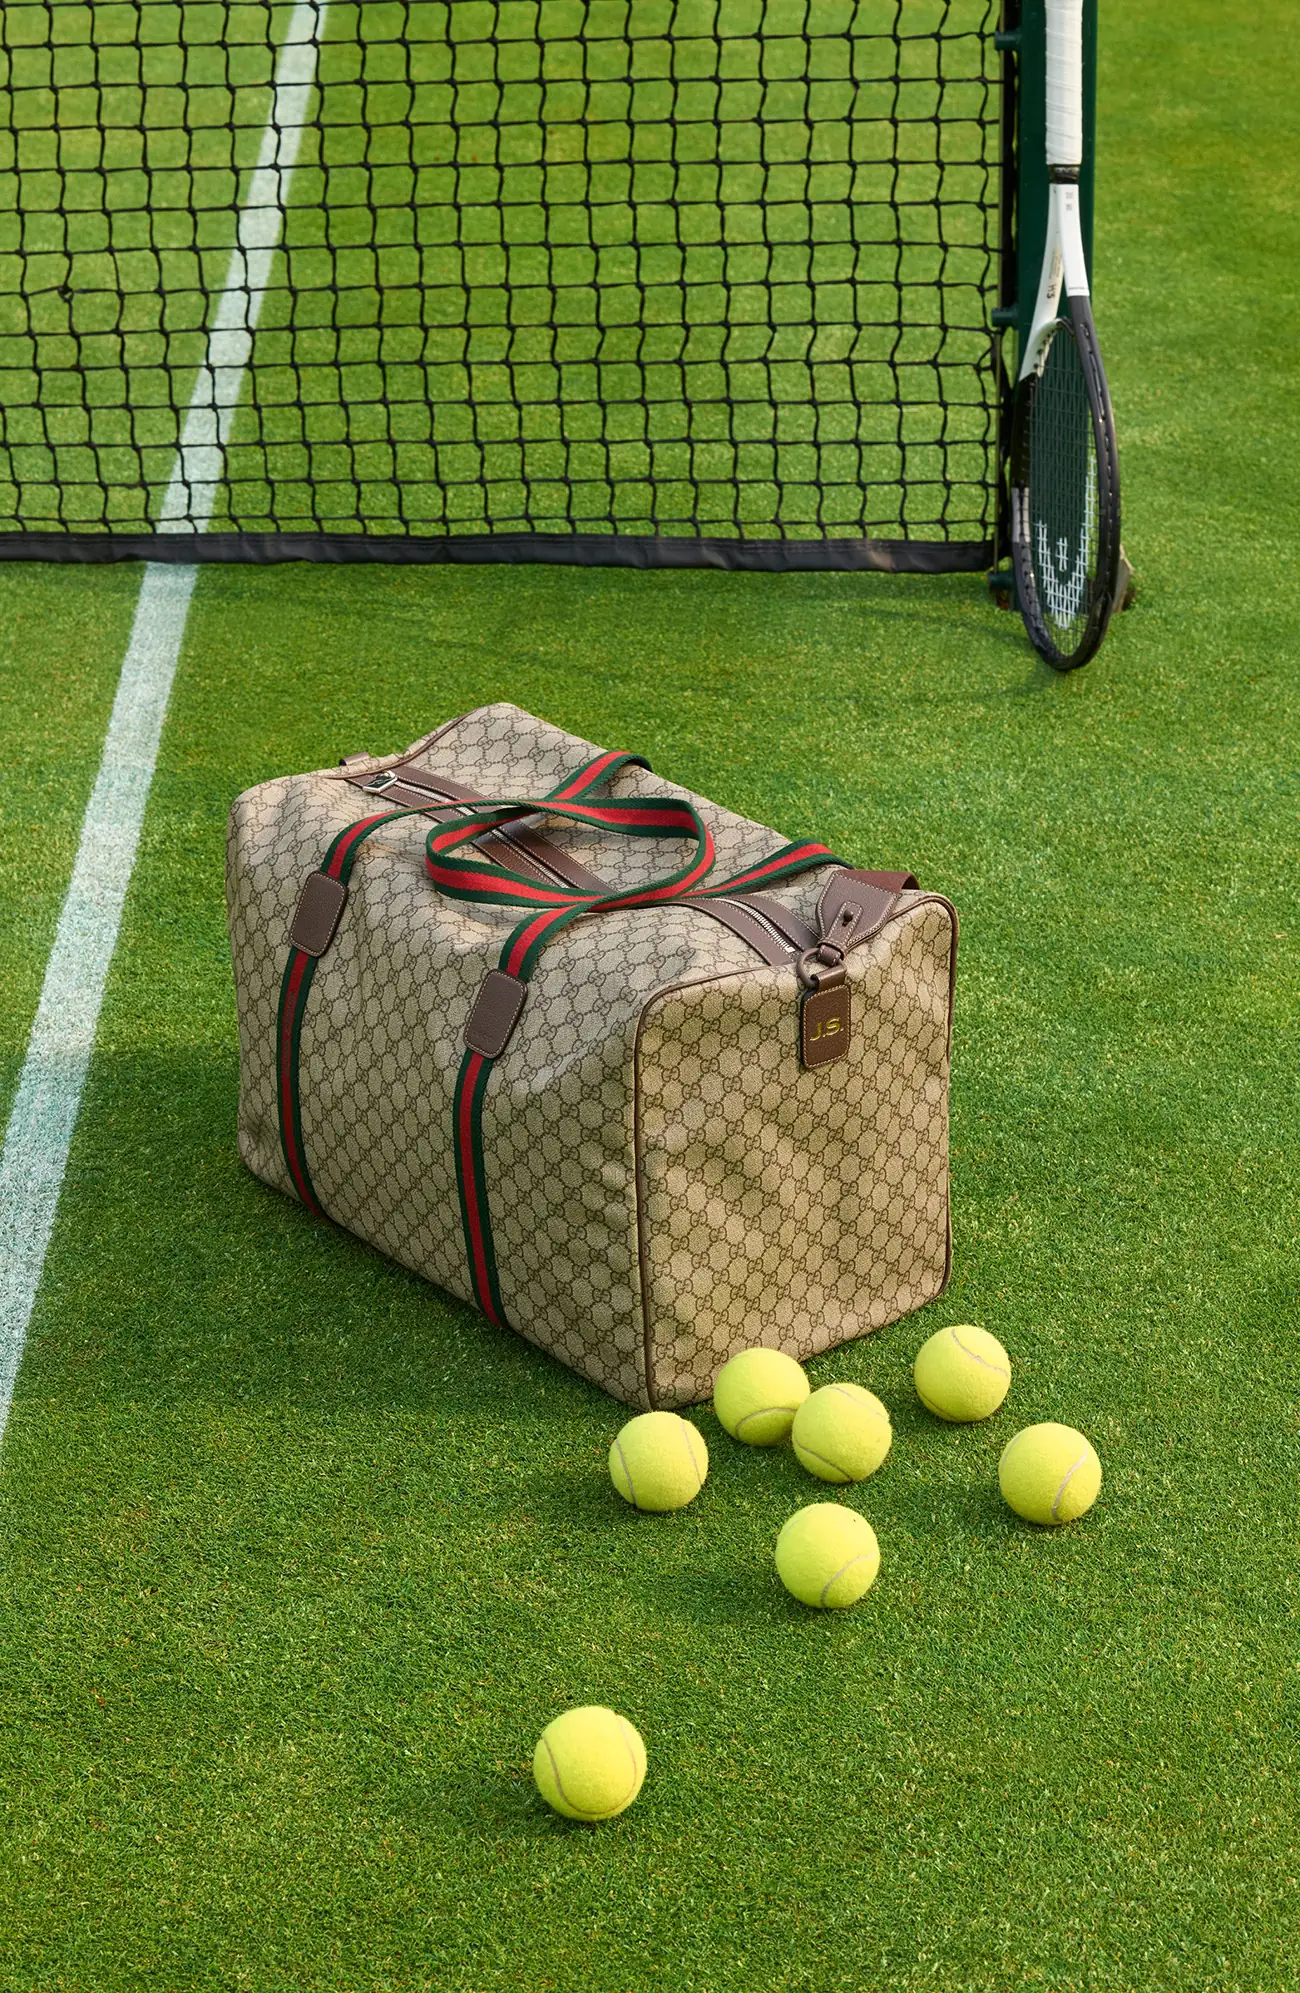 Serving style at Wimbledon: Jannik Sinner's Gucci game-set-match